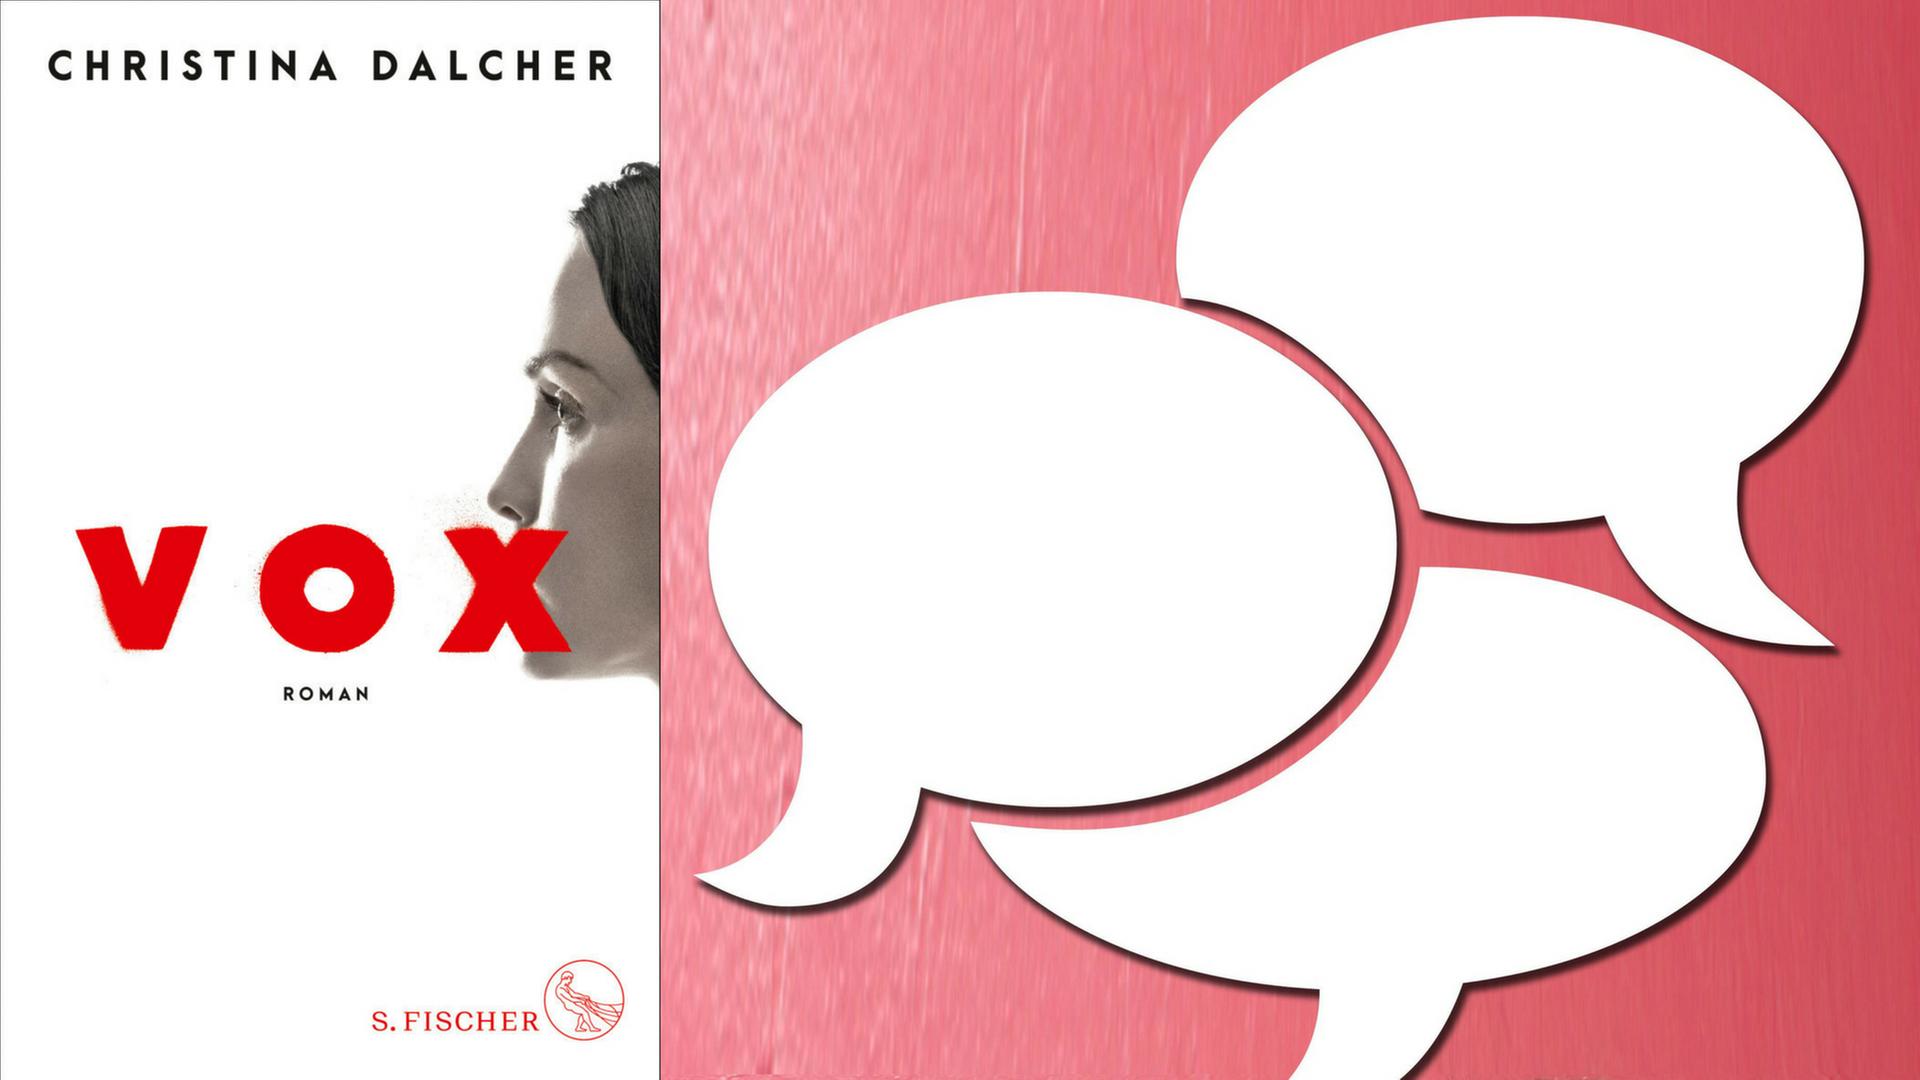 Buchcover: Christina Dalcher: "Vox" und leere Sprechblasen